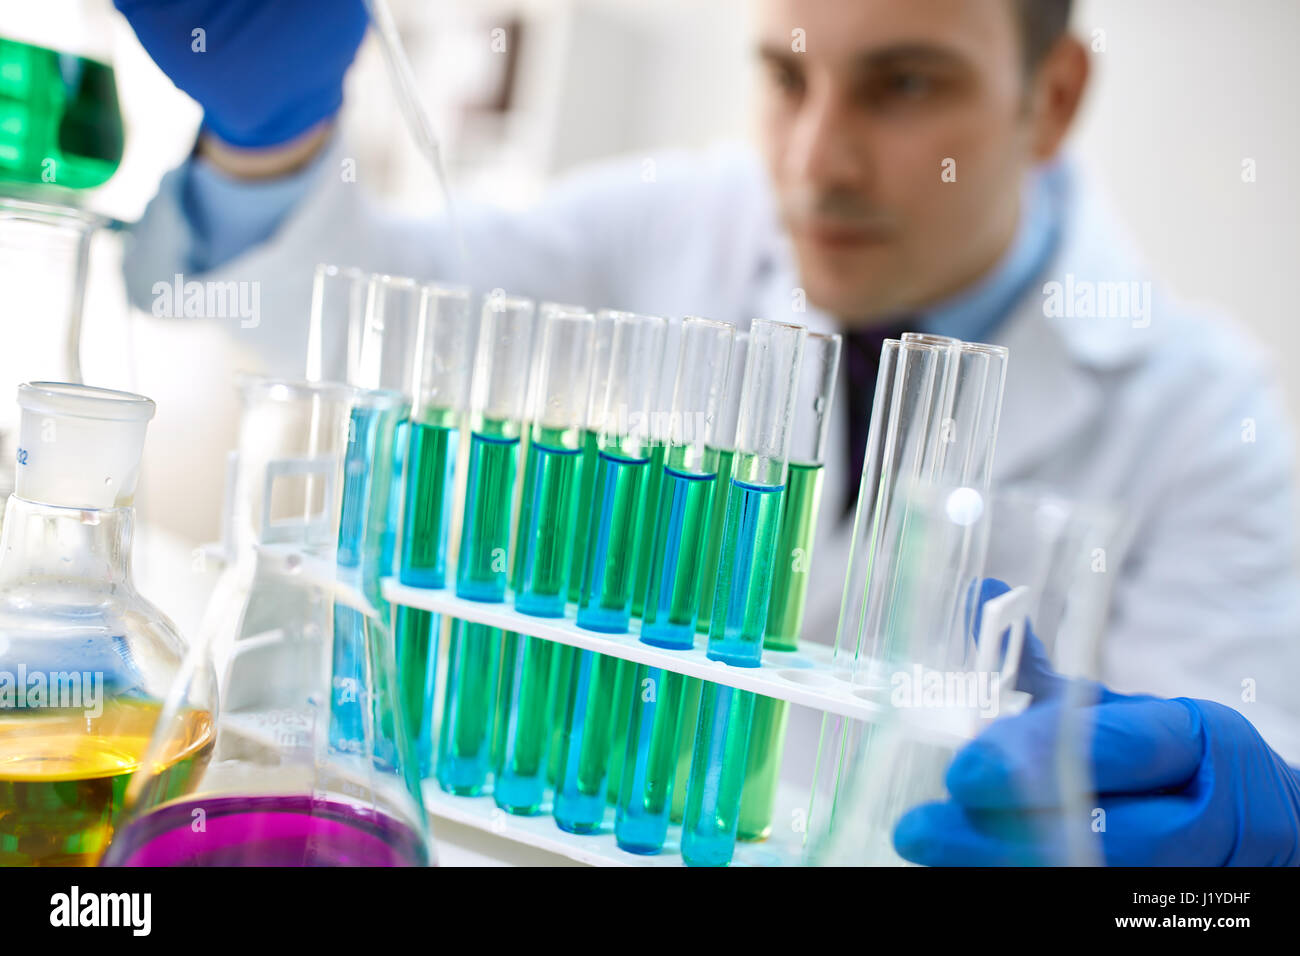 Tubes à essai en verre remplis de liquide pour une expérience dans un laboratoire de recherche scientifique Banque D'Images